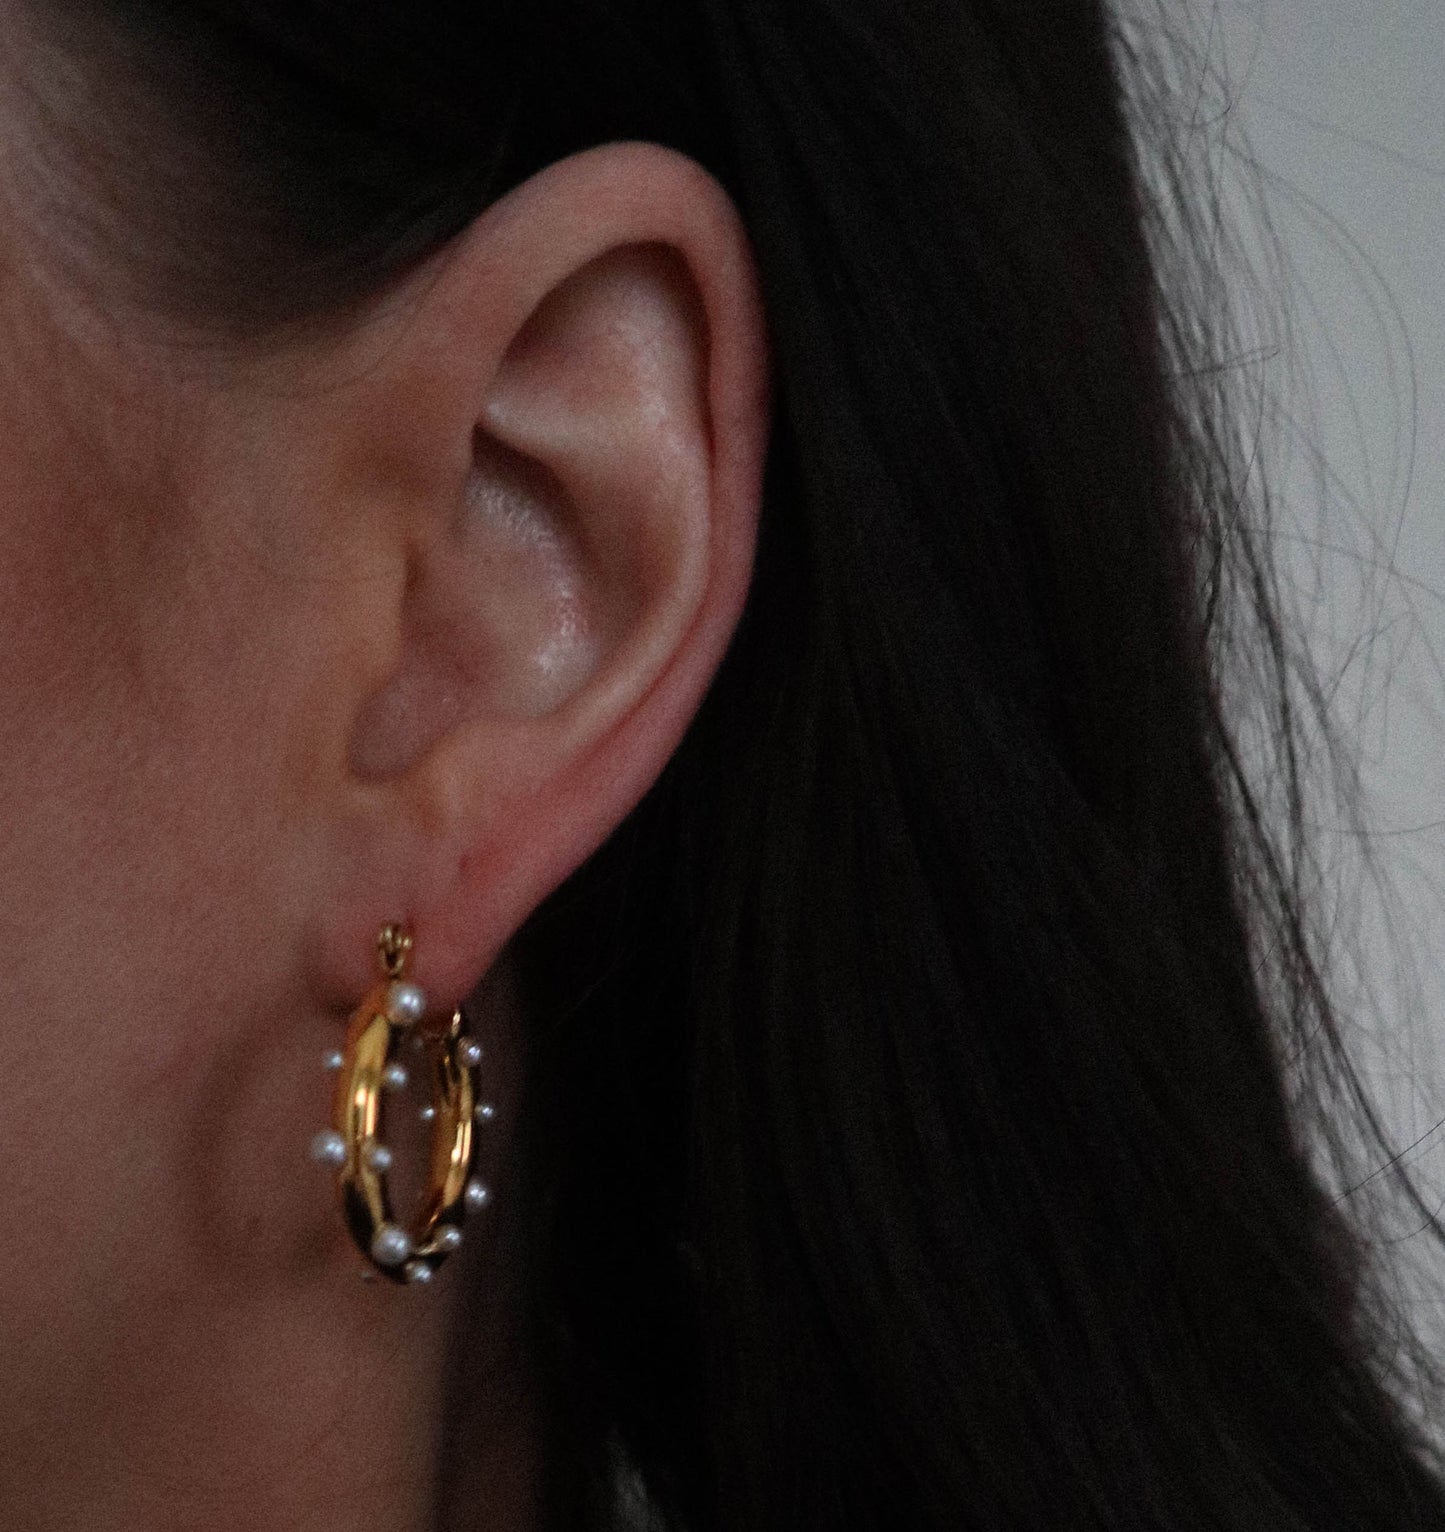 Pearfection earrings